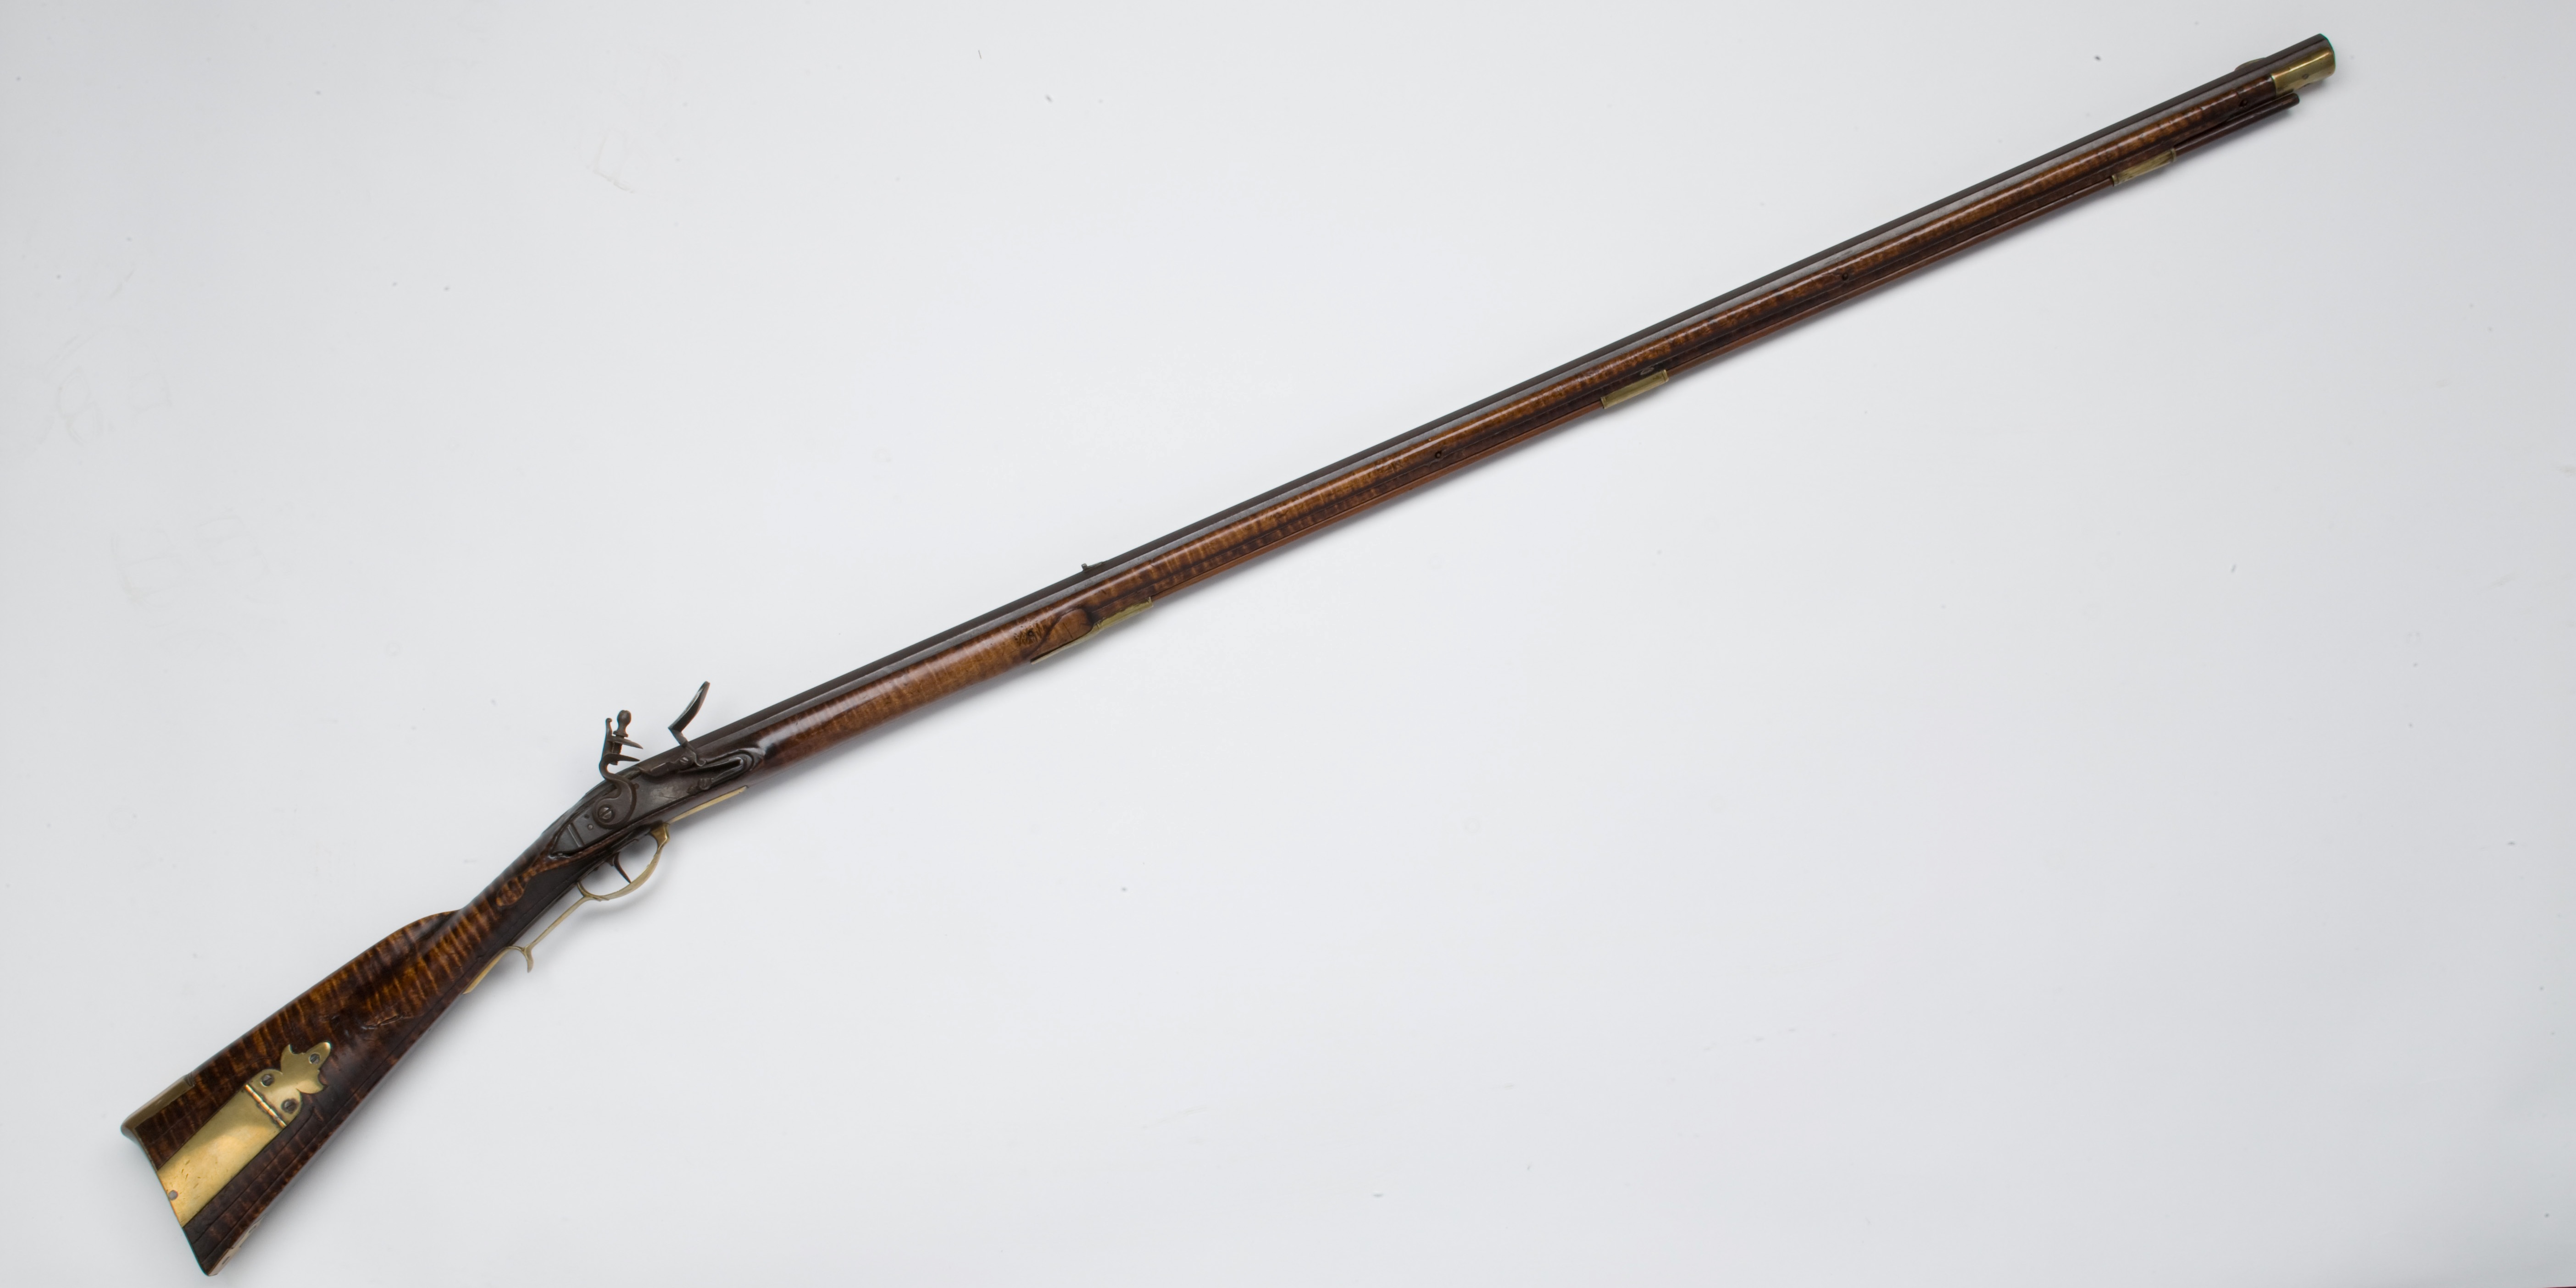 Pennsylvania long rifle, ca. 1780-1790